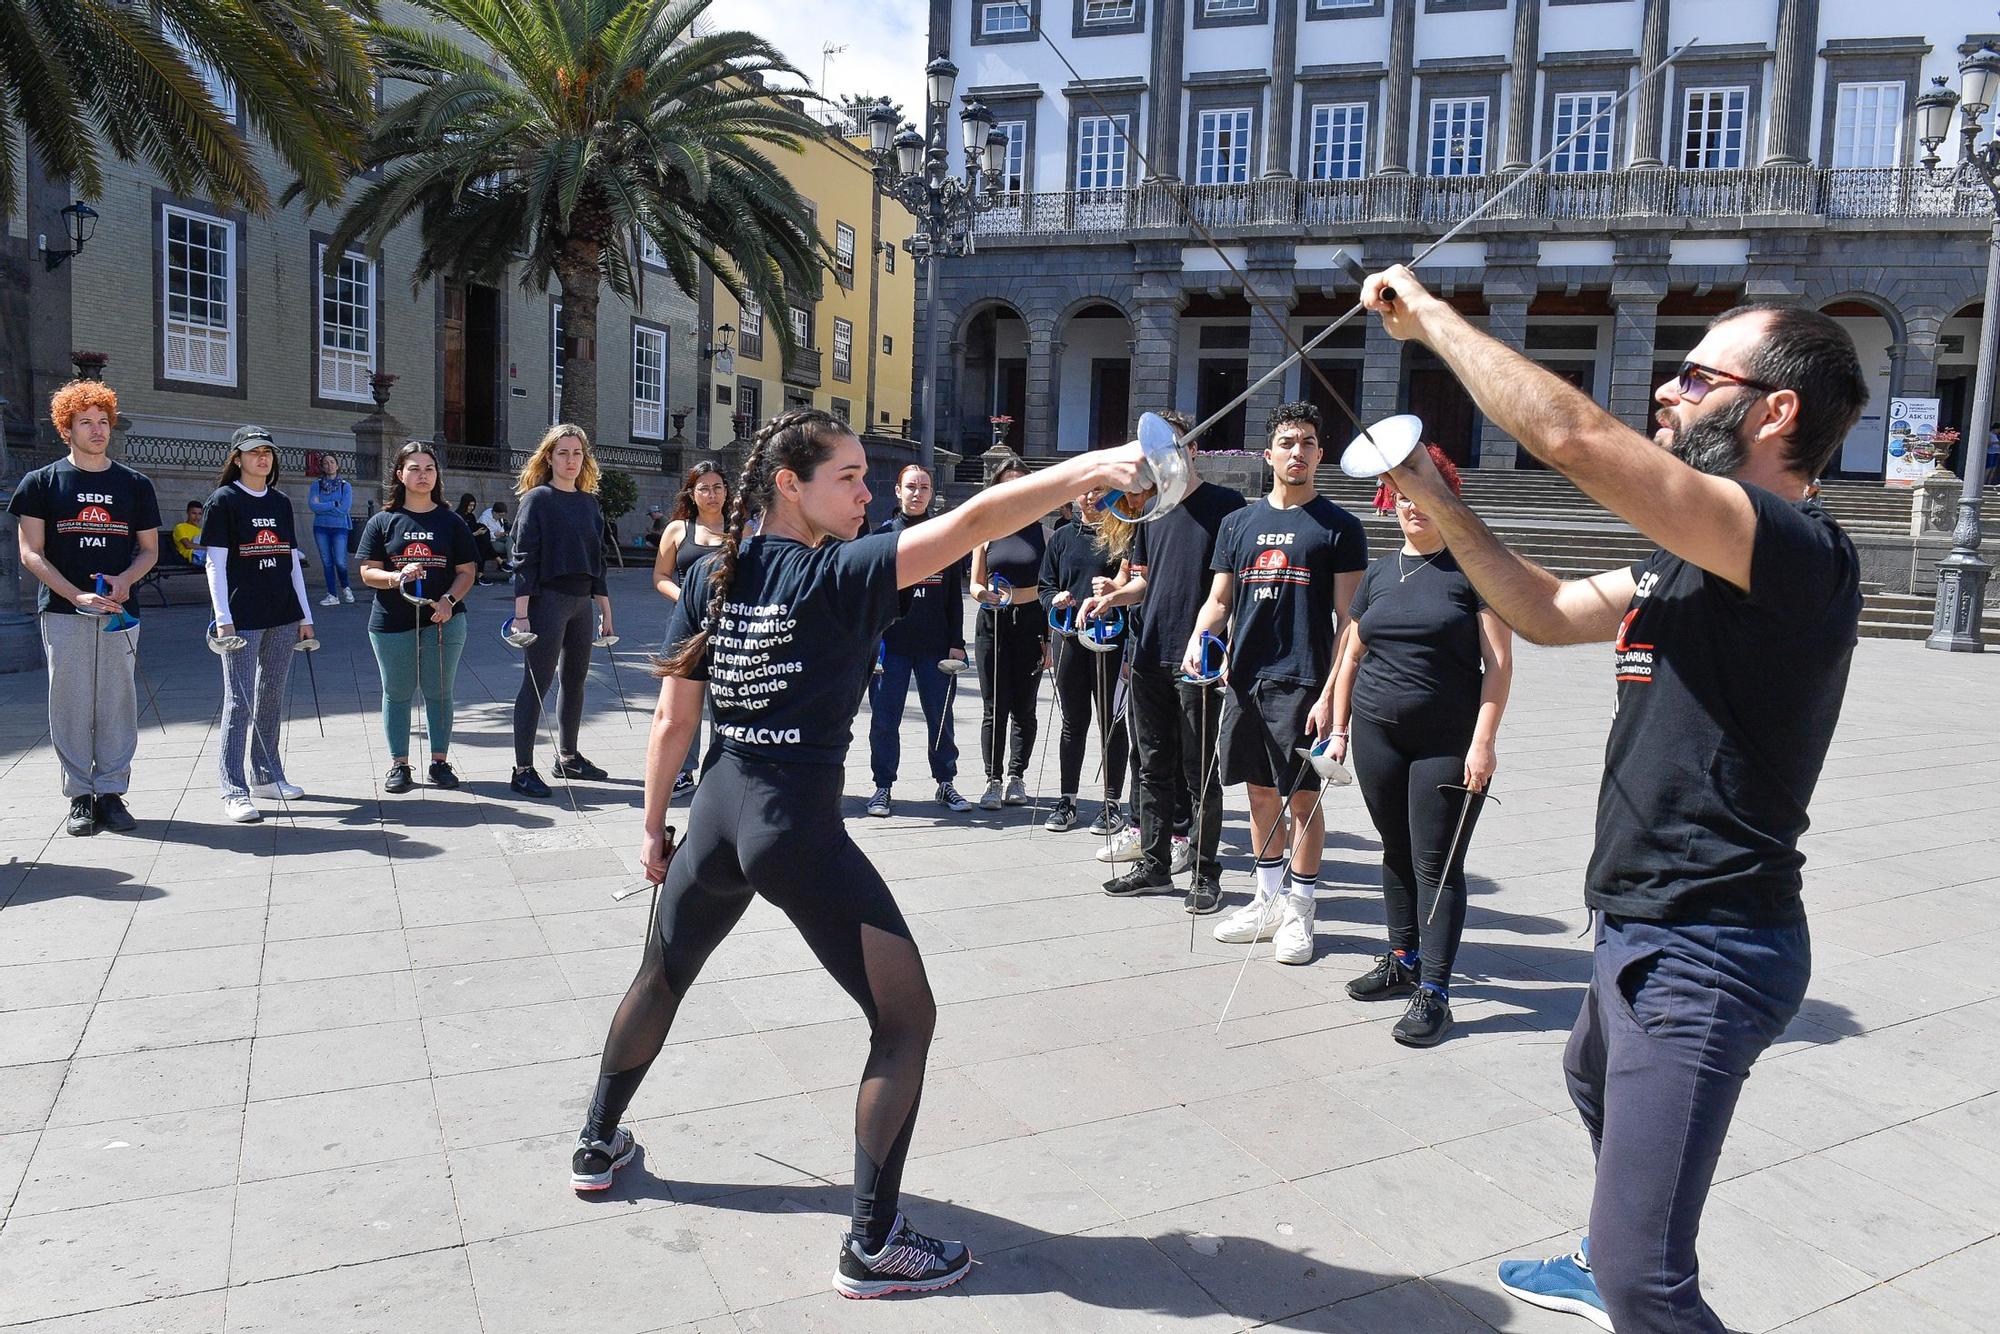 Nueva protesta de la Escuela de Actores de Canarias